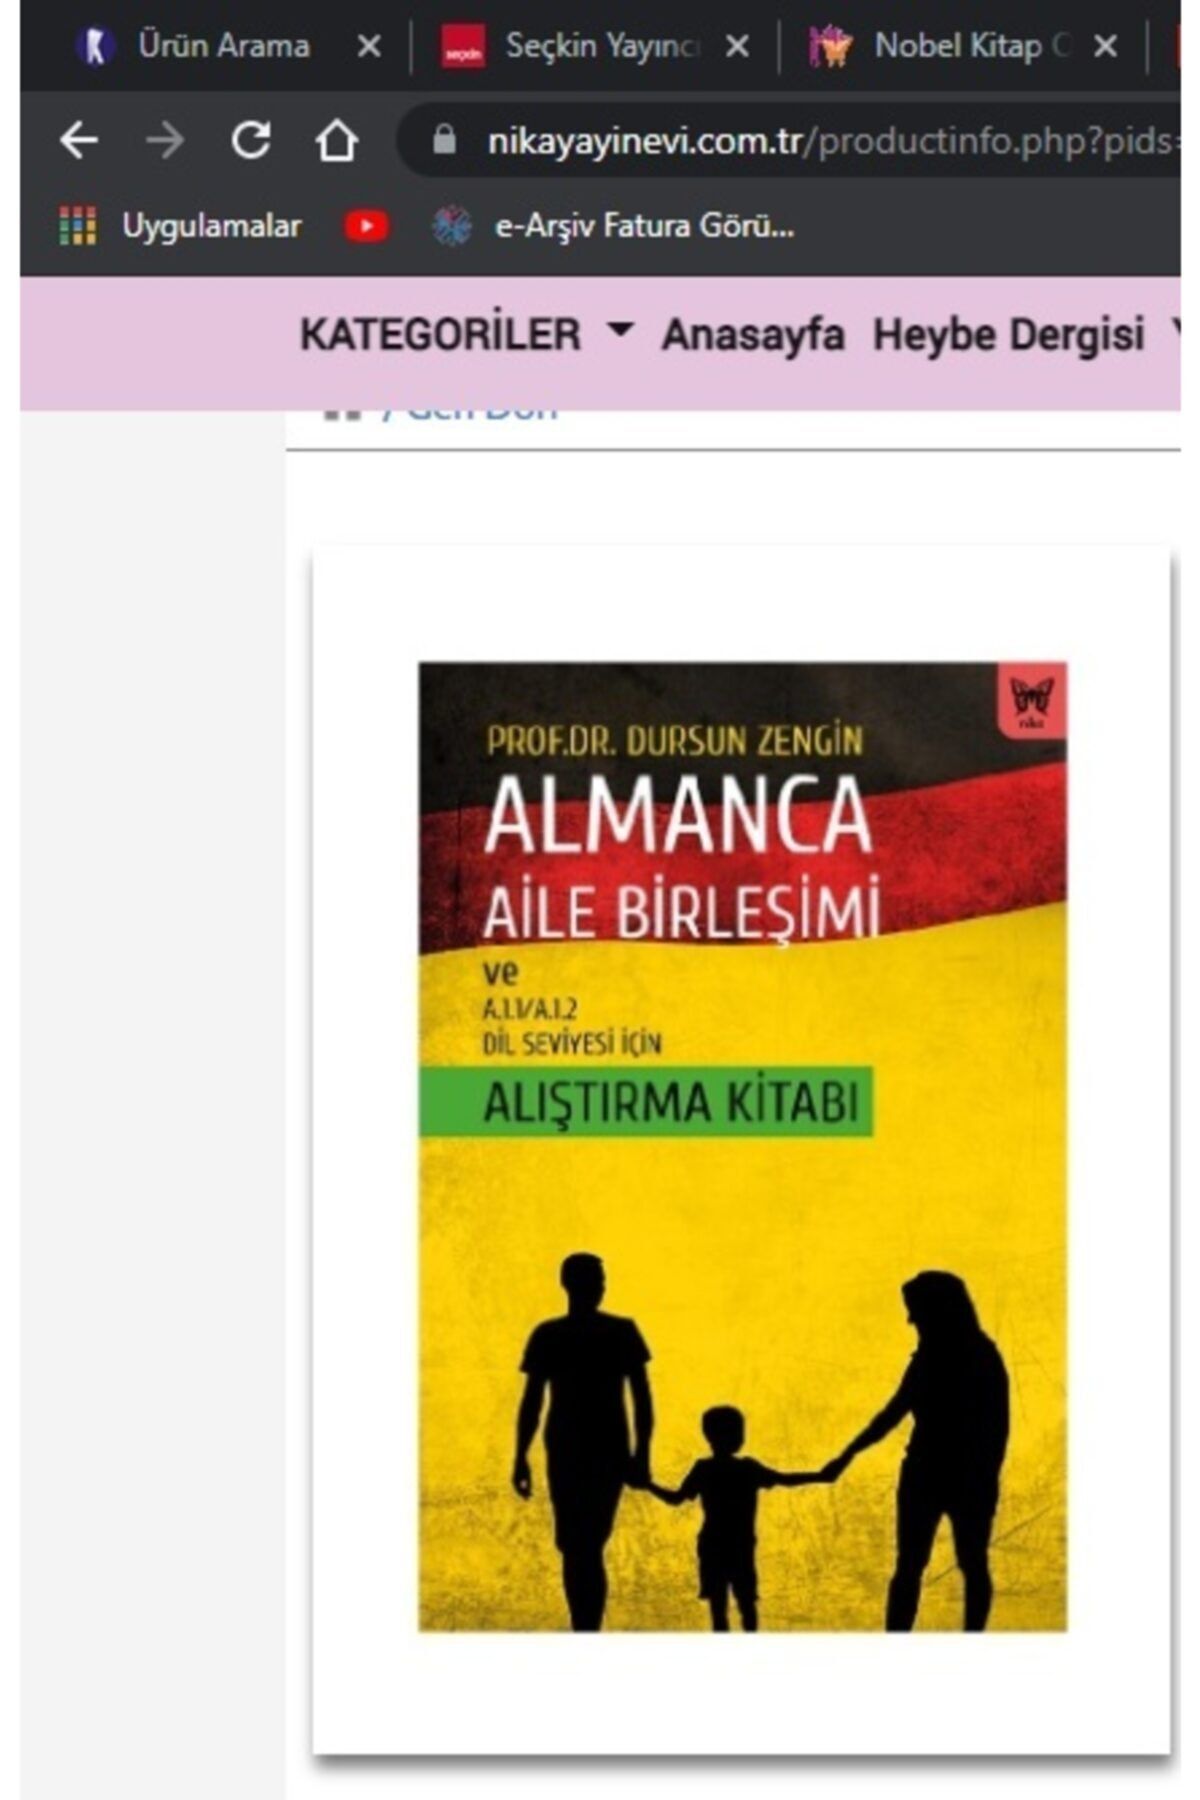 Nika Yayınevi Almanca Aile Birleşimi Ve A.1.1/a.1.2 Dil Seviyesi Için Alıştırma Kitabı - Dursun Zengin